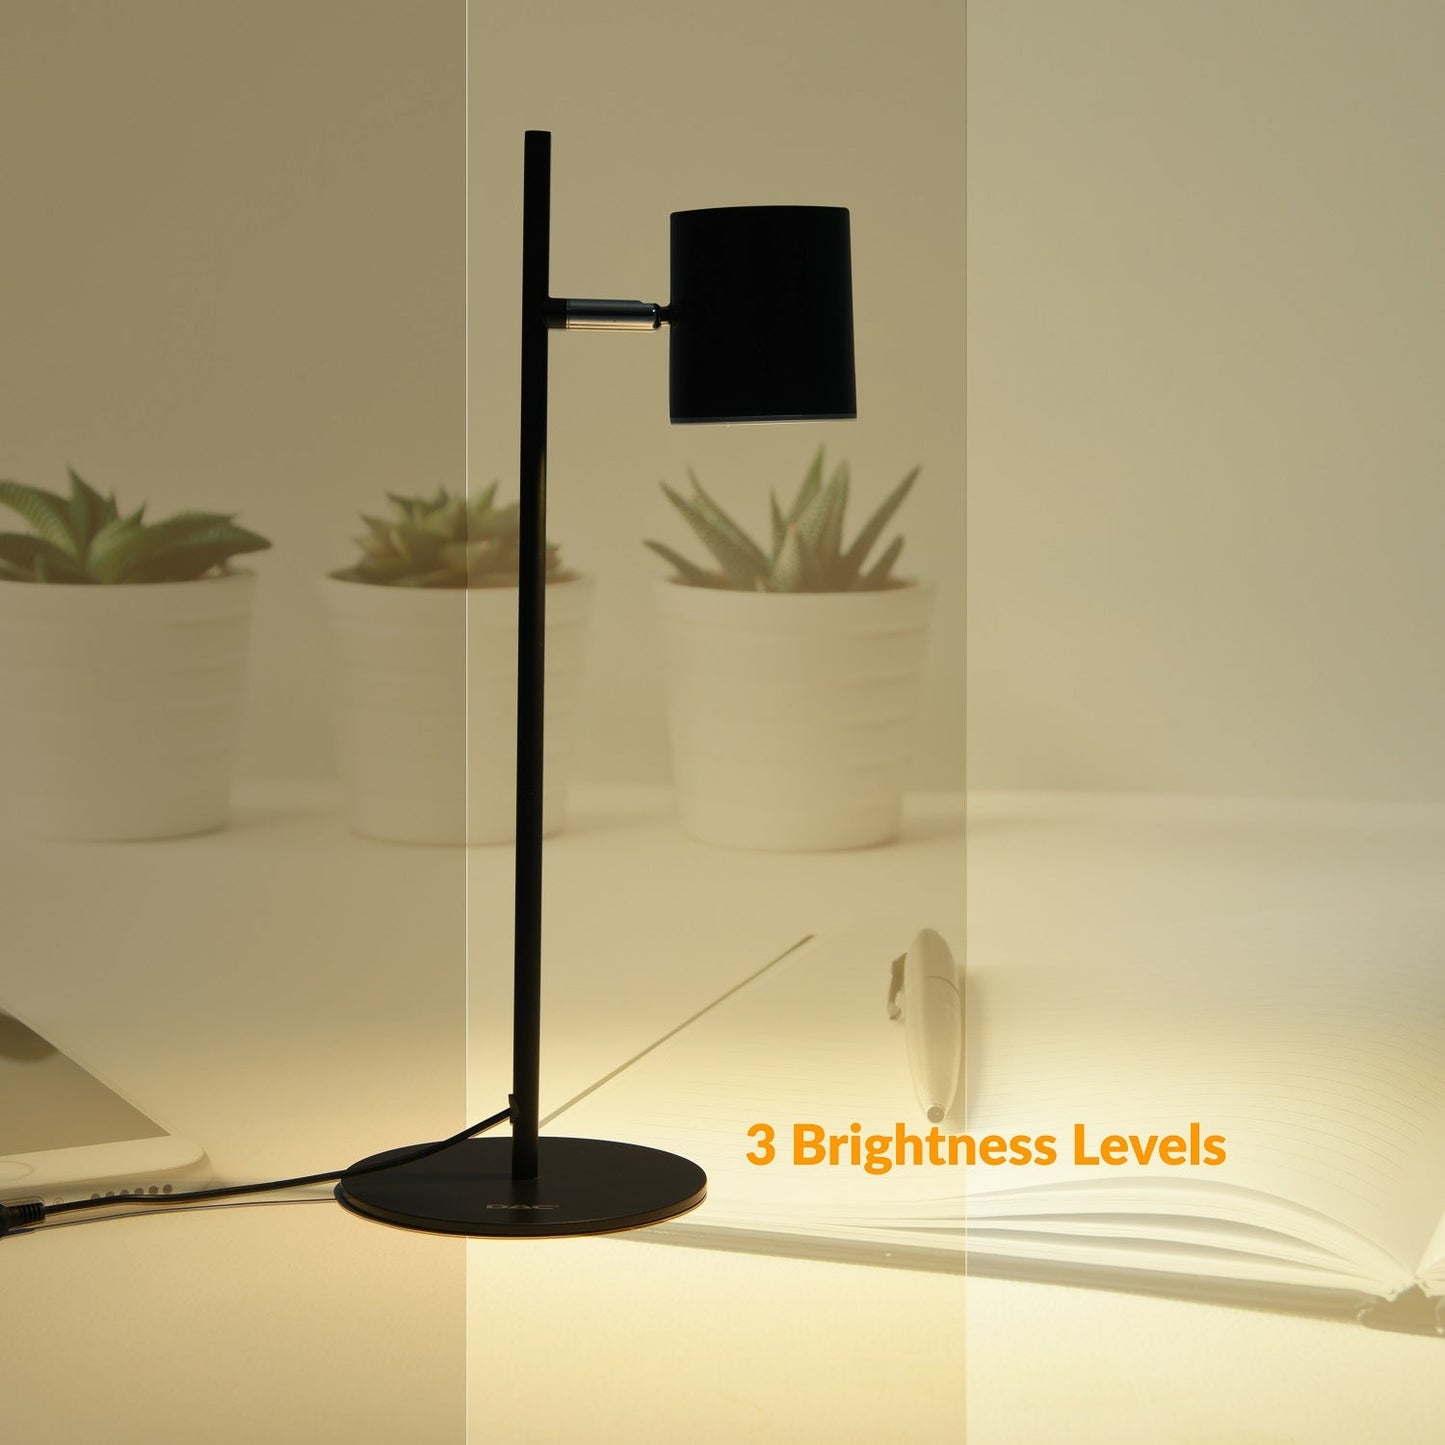 Lampe de bureau LED en métal DAC® MP-321 avec tête rotative à 340°, noire